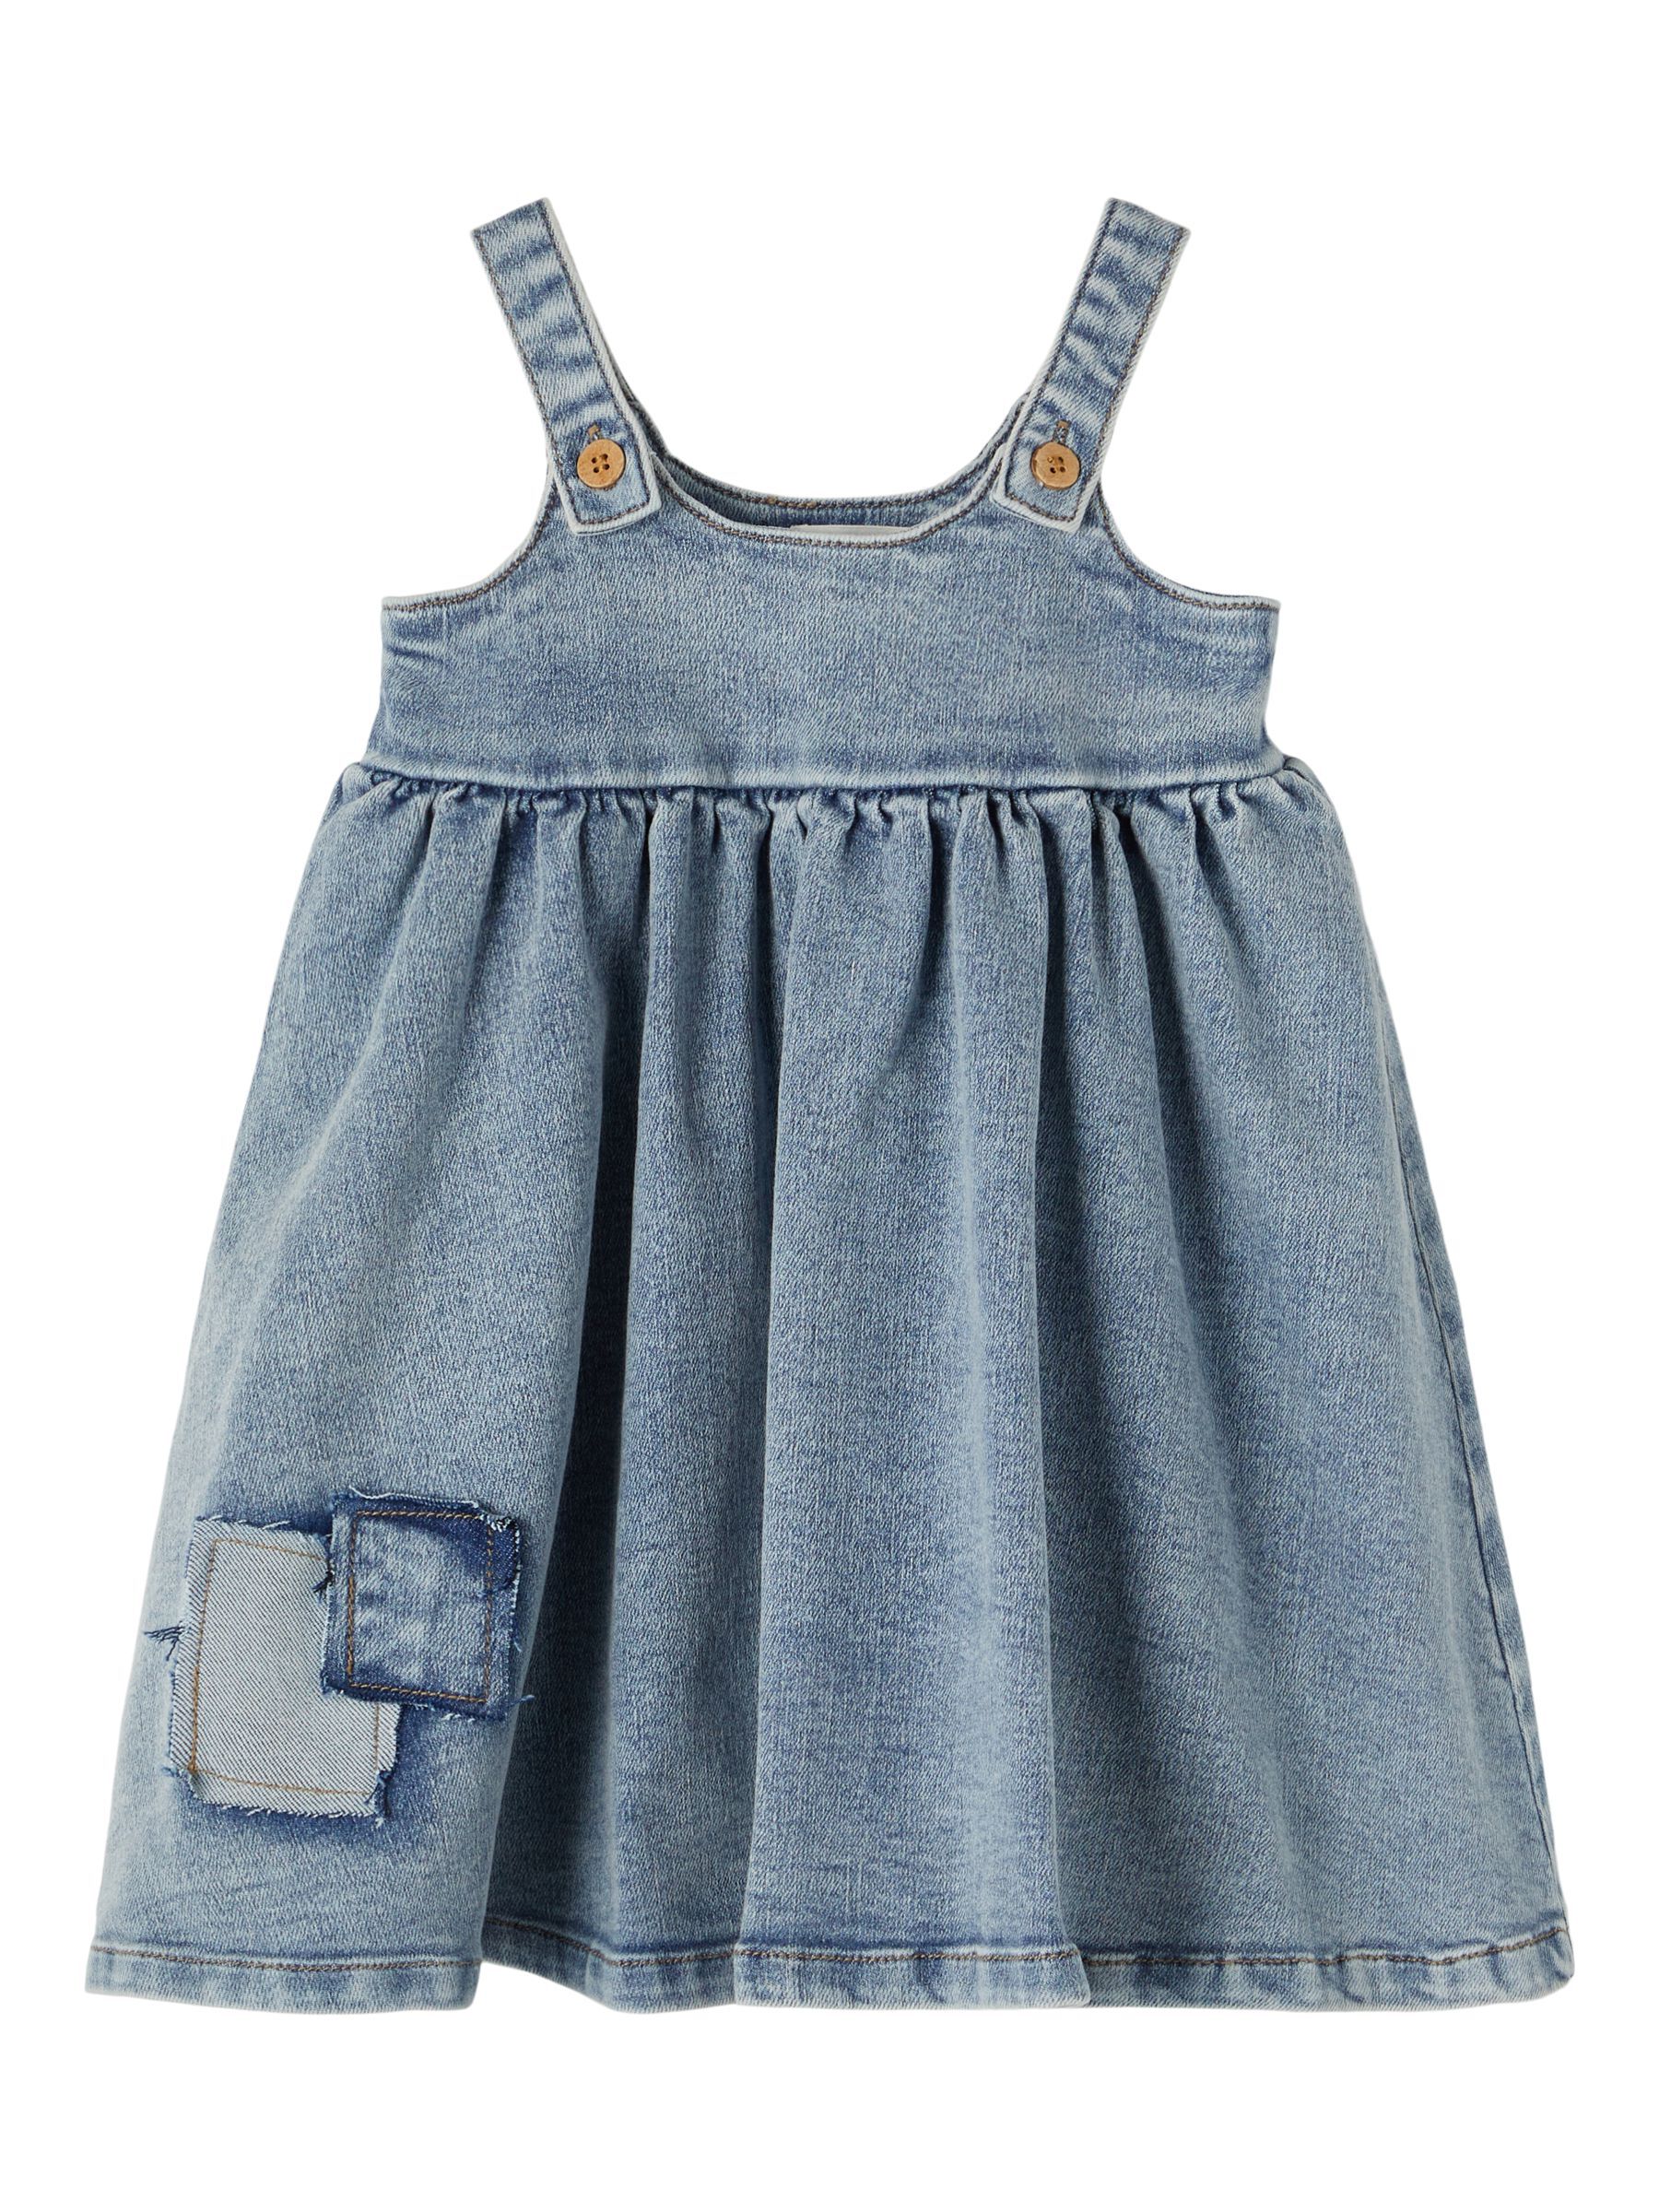 NEW Baby Girl Sleeveless Summer Denim Dress size 00.1 